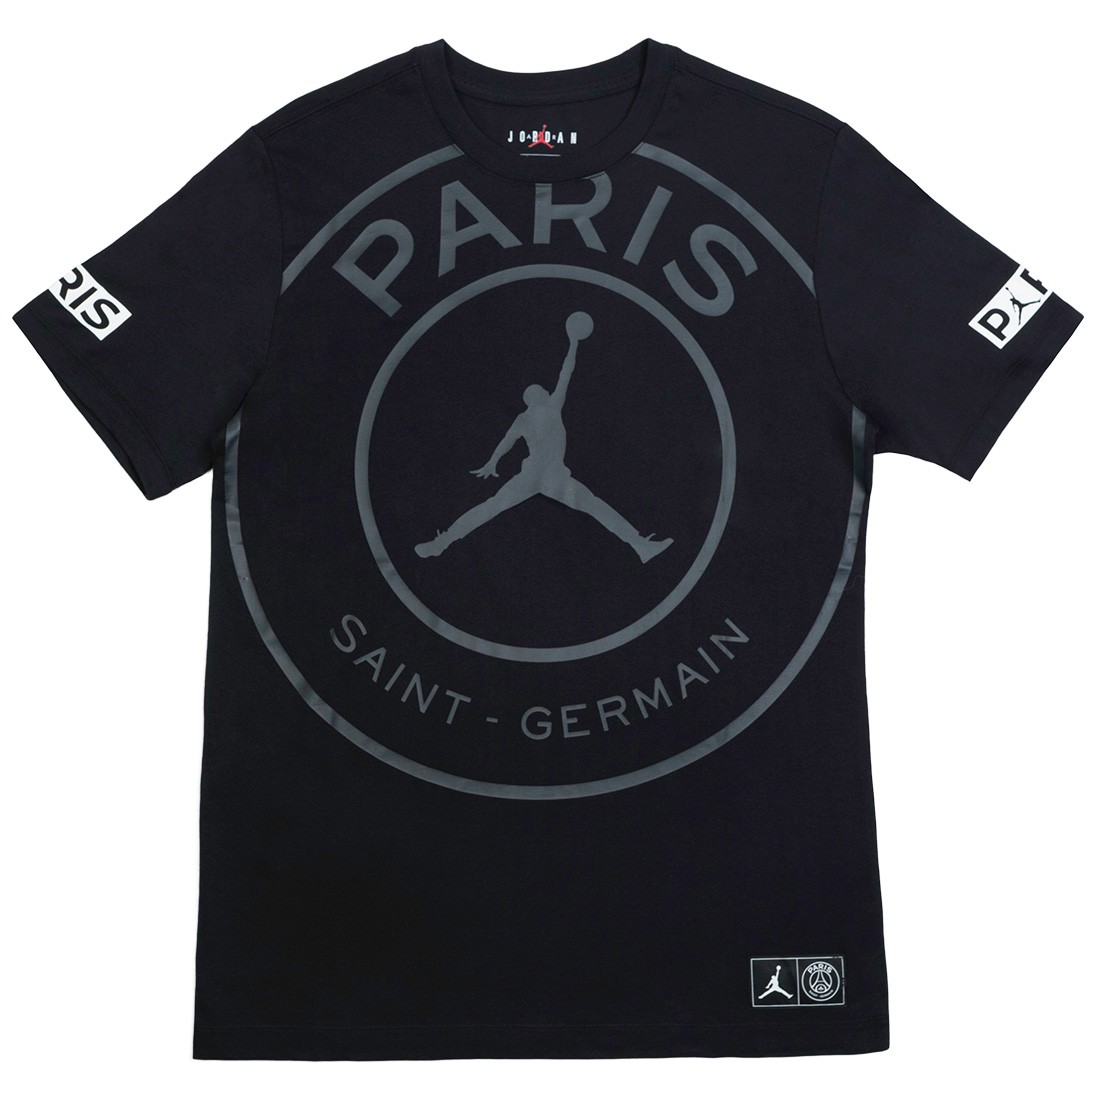 jordan x paris saint germain logo tee black